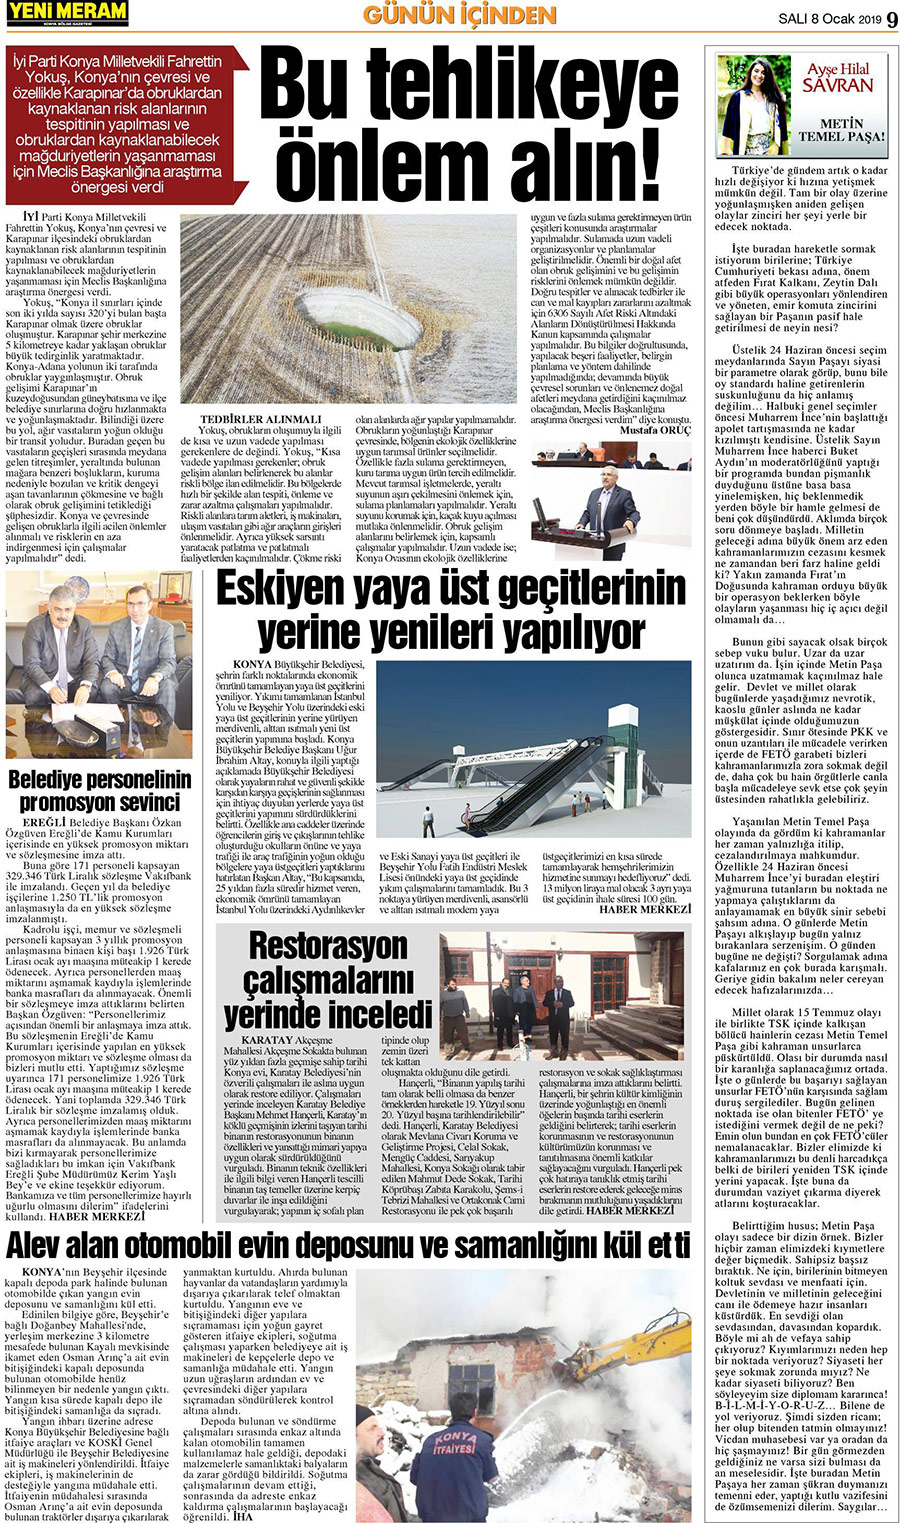 8 Ocak 2019 Yeni Meram Gazetesi